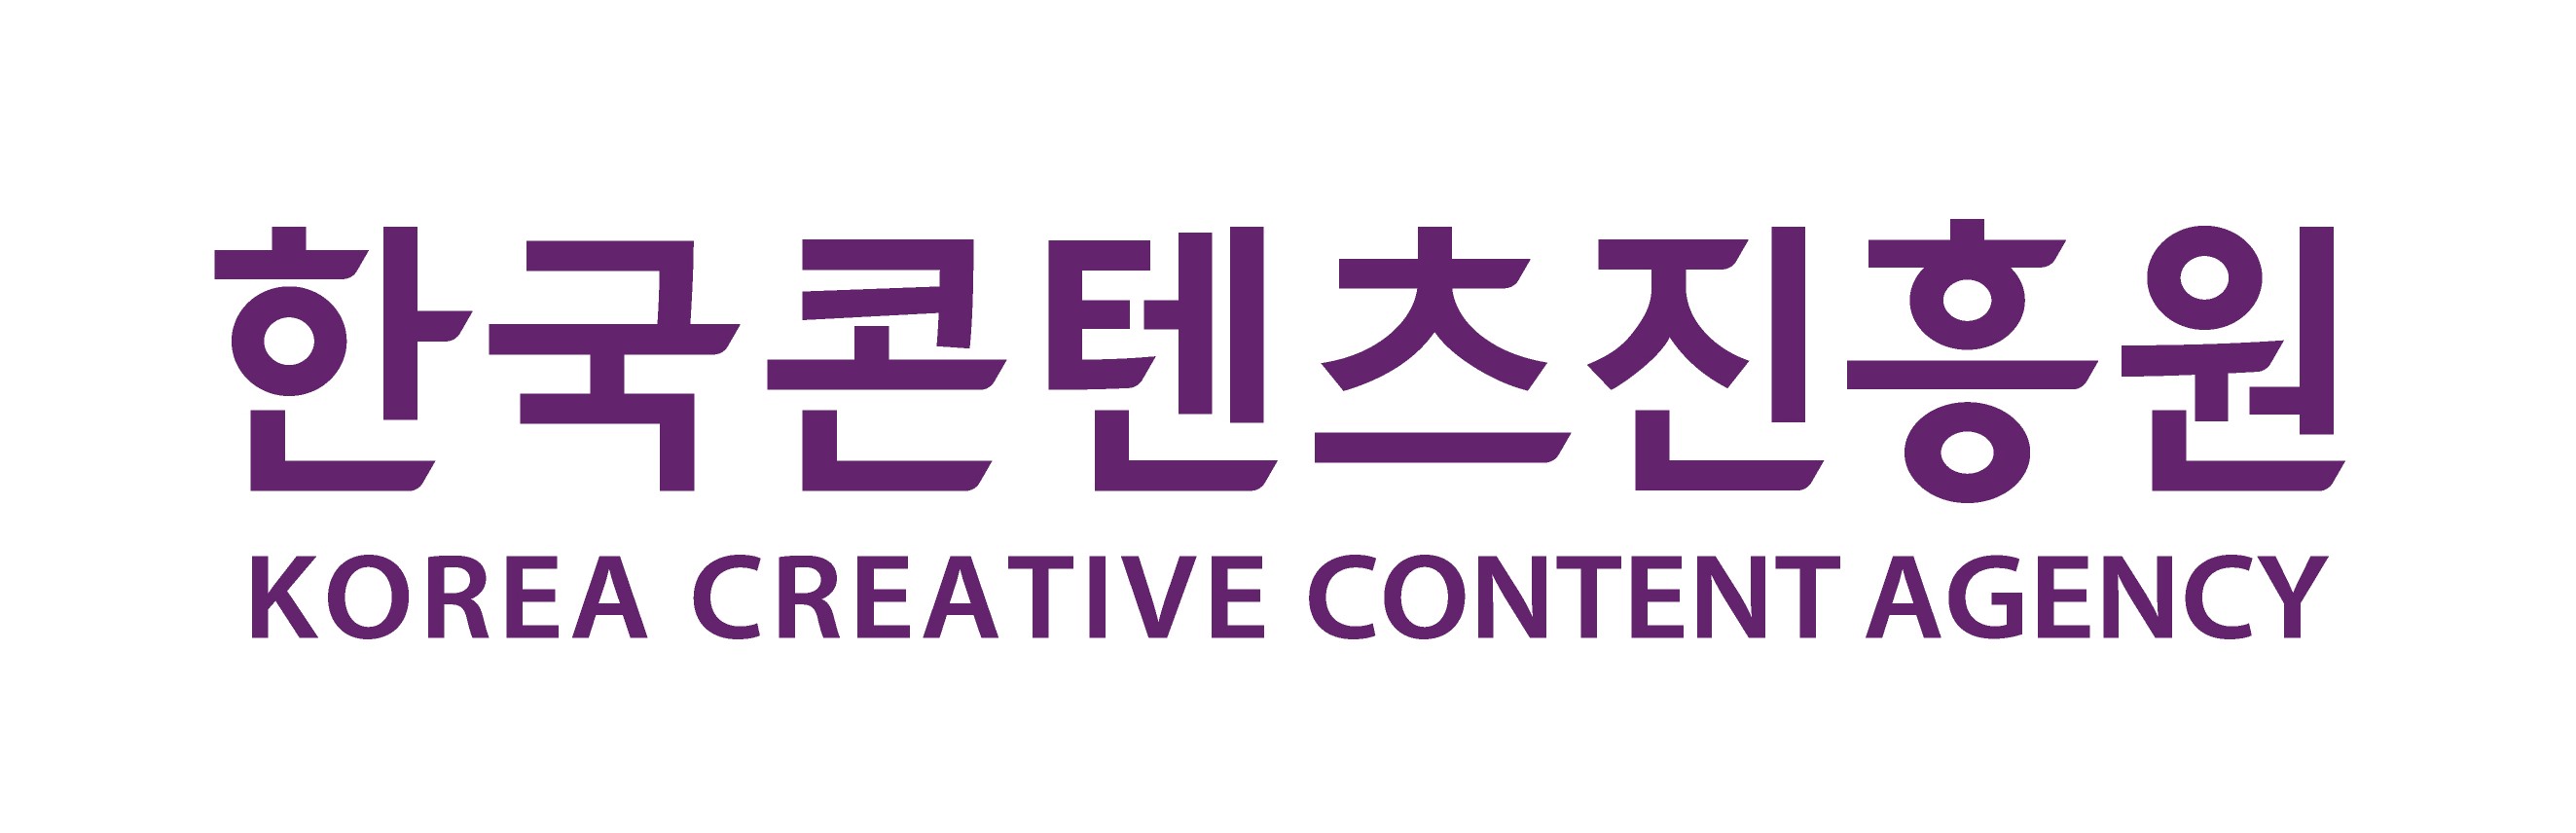 한국 콘텐츠진흥원(KOCCA)